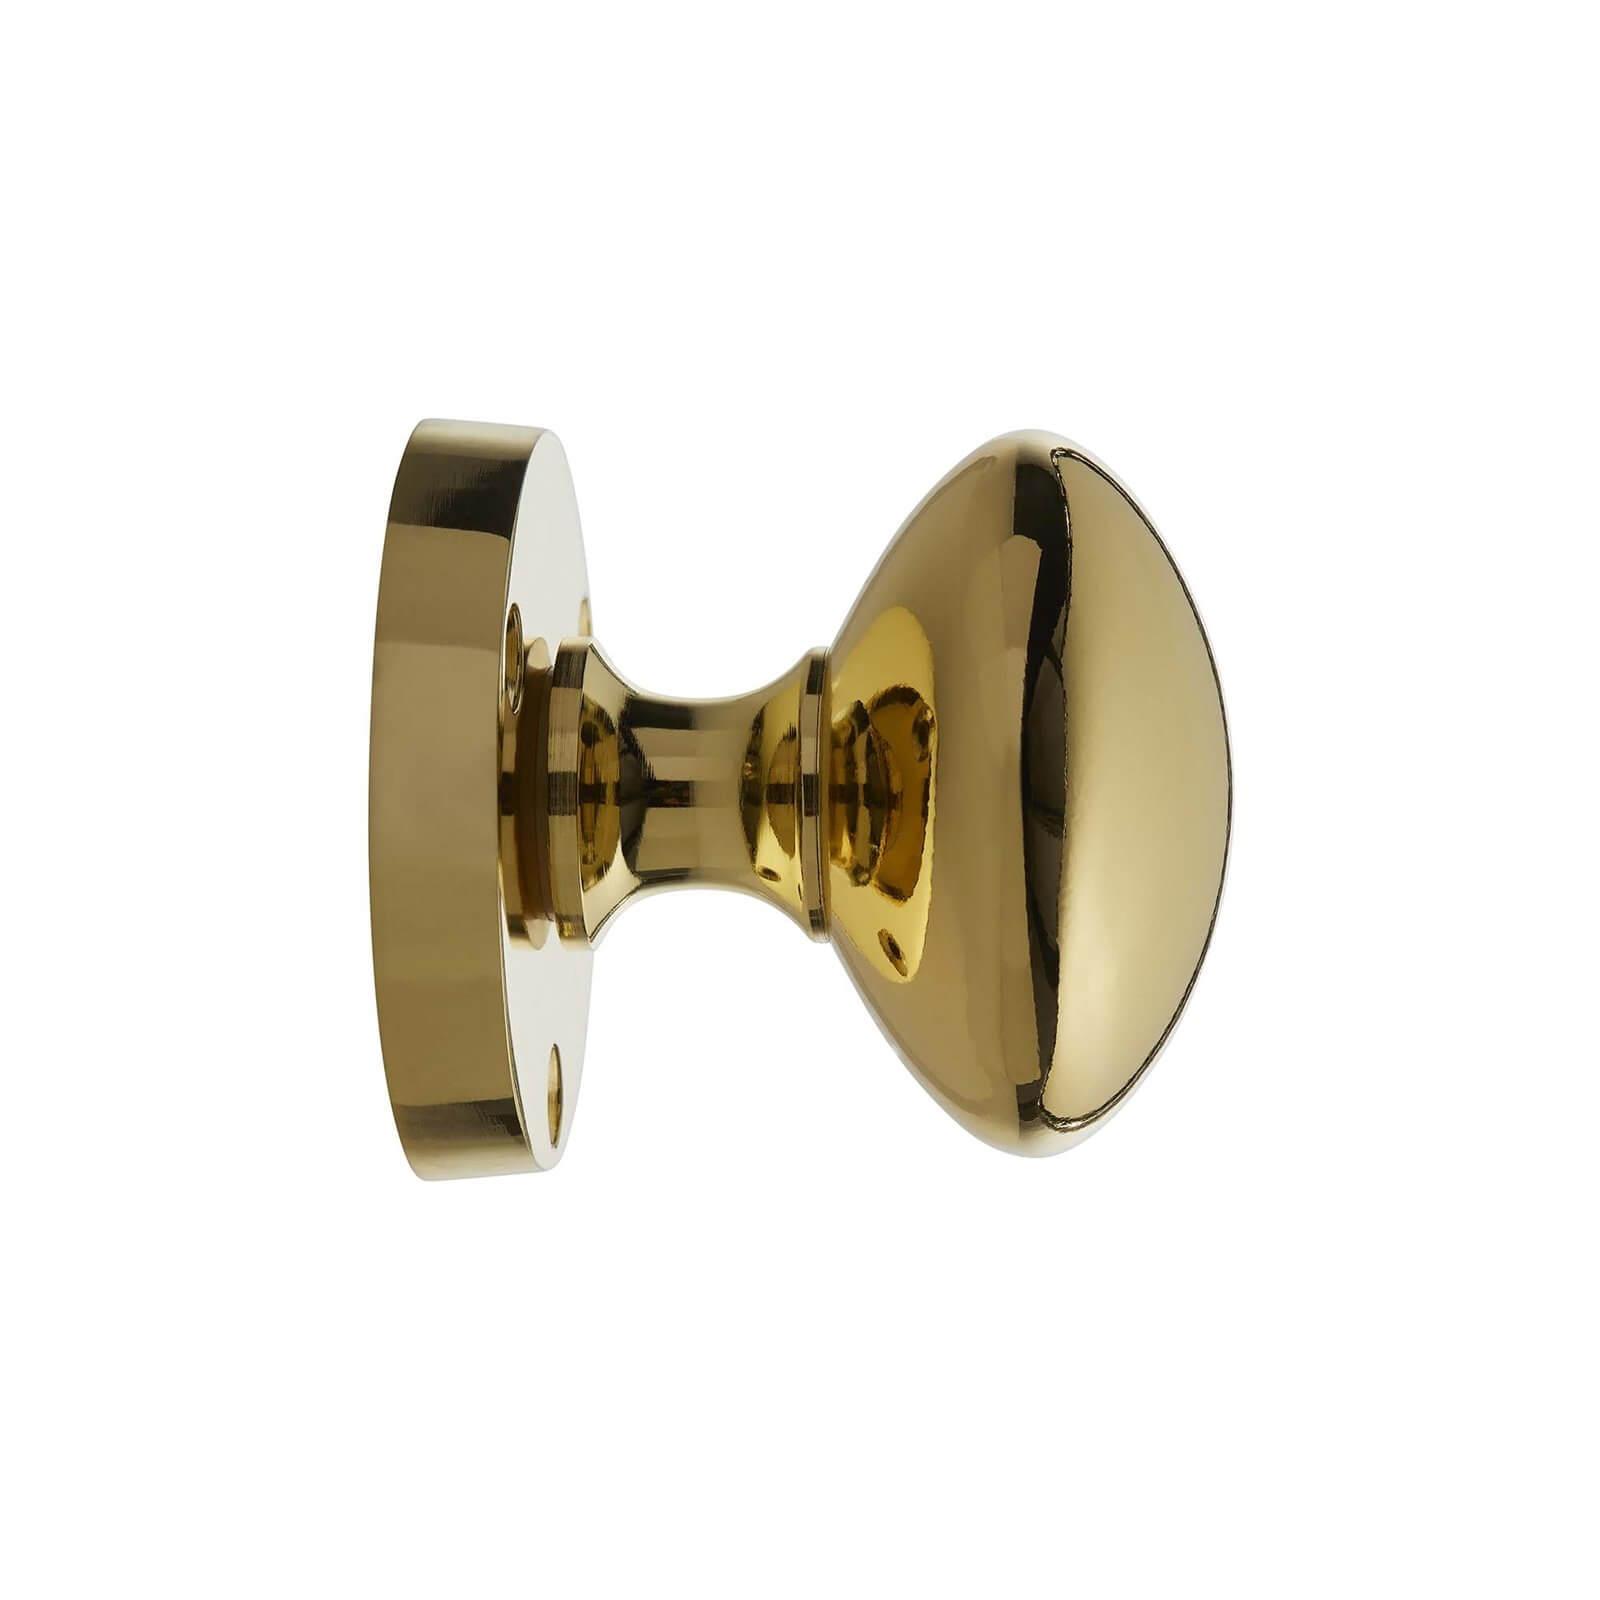 Homebuild Victorian Mortice Knob Set - Polished Brass